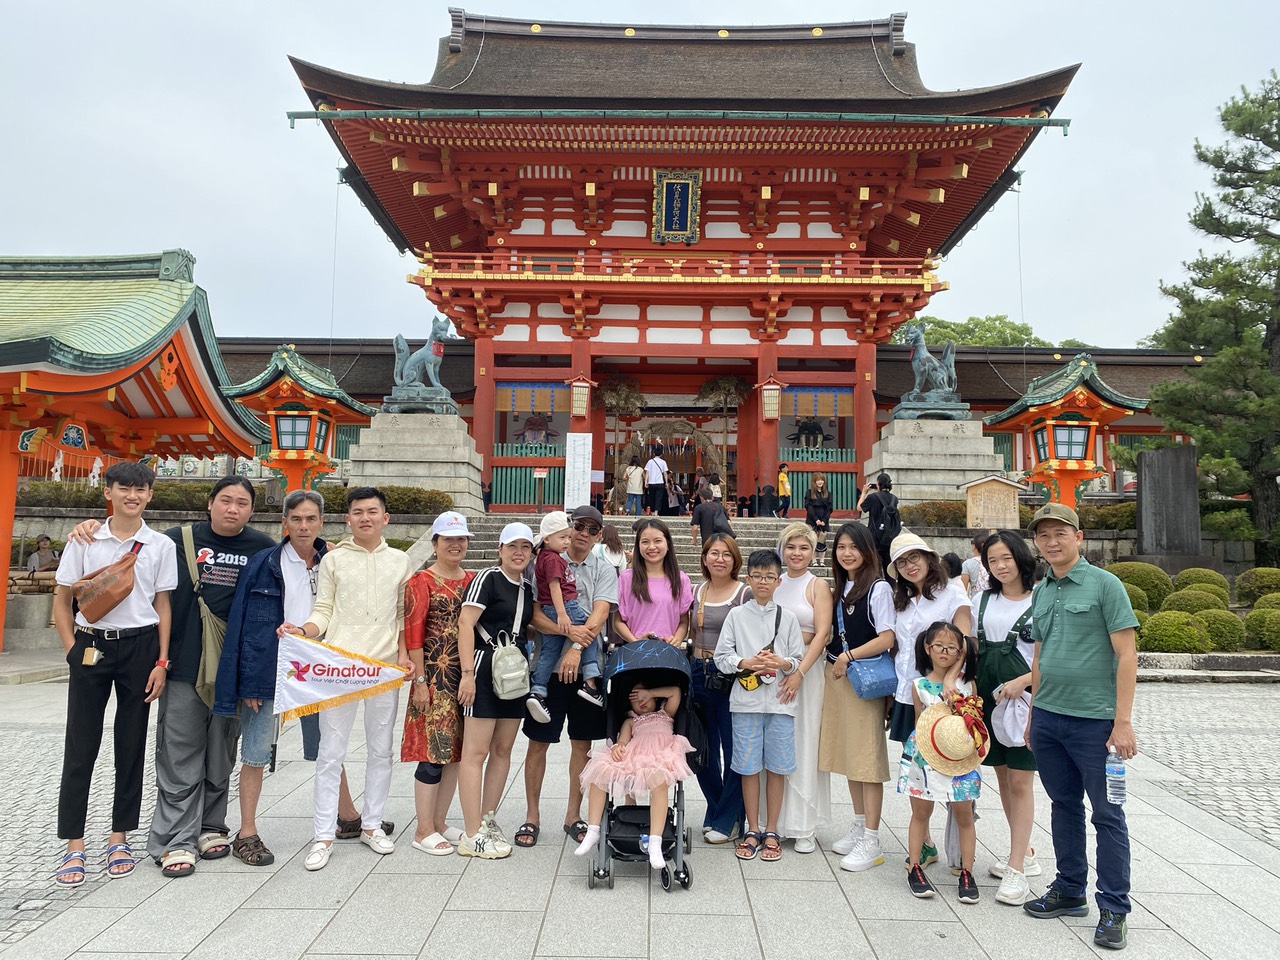 Du lịch Nhật Bản - Đoàn 19 khách Khám phá mùa hè Nhật Bản Osaka - Kyoto - Tokyo